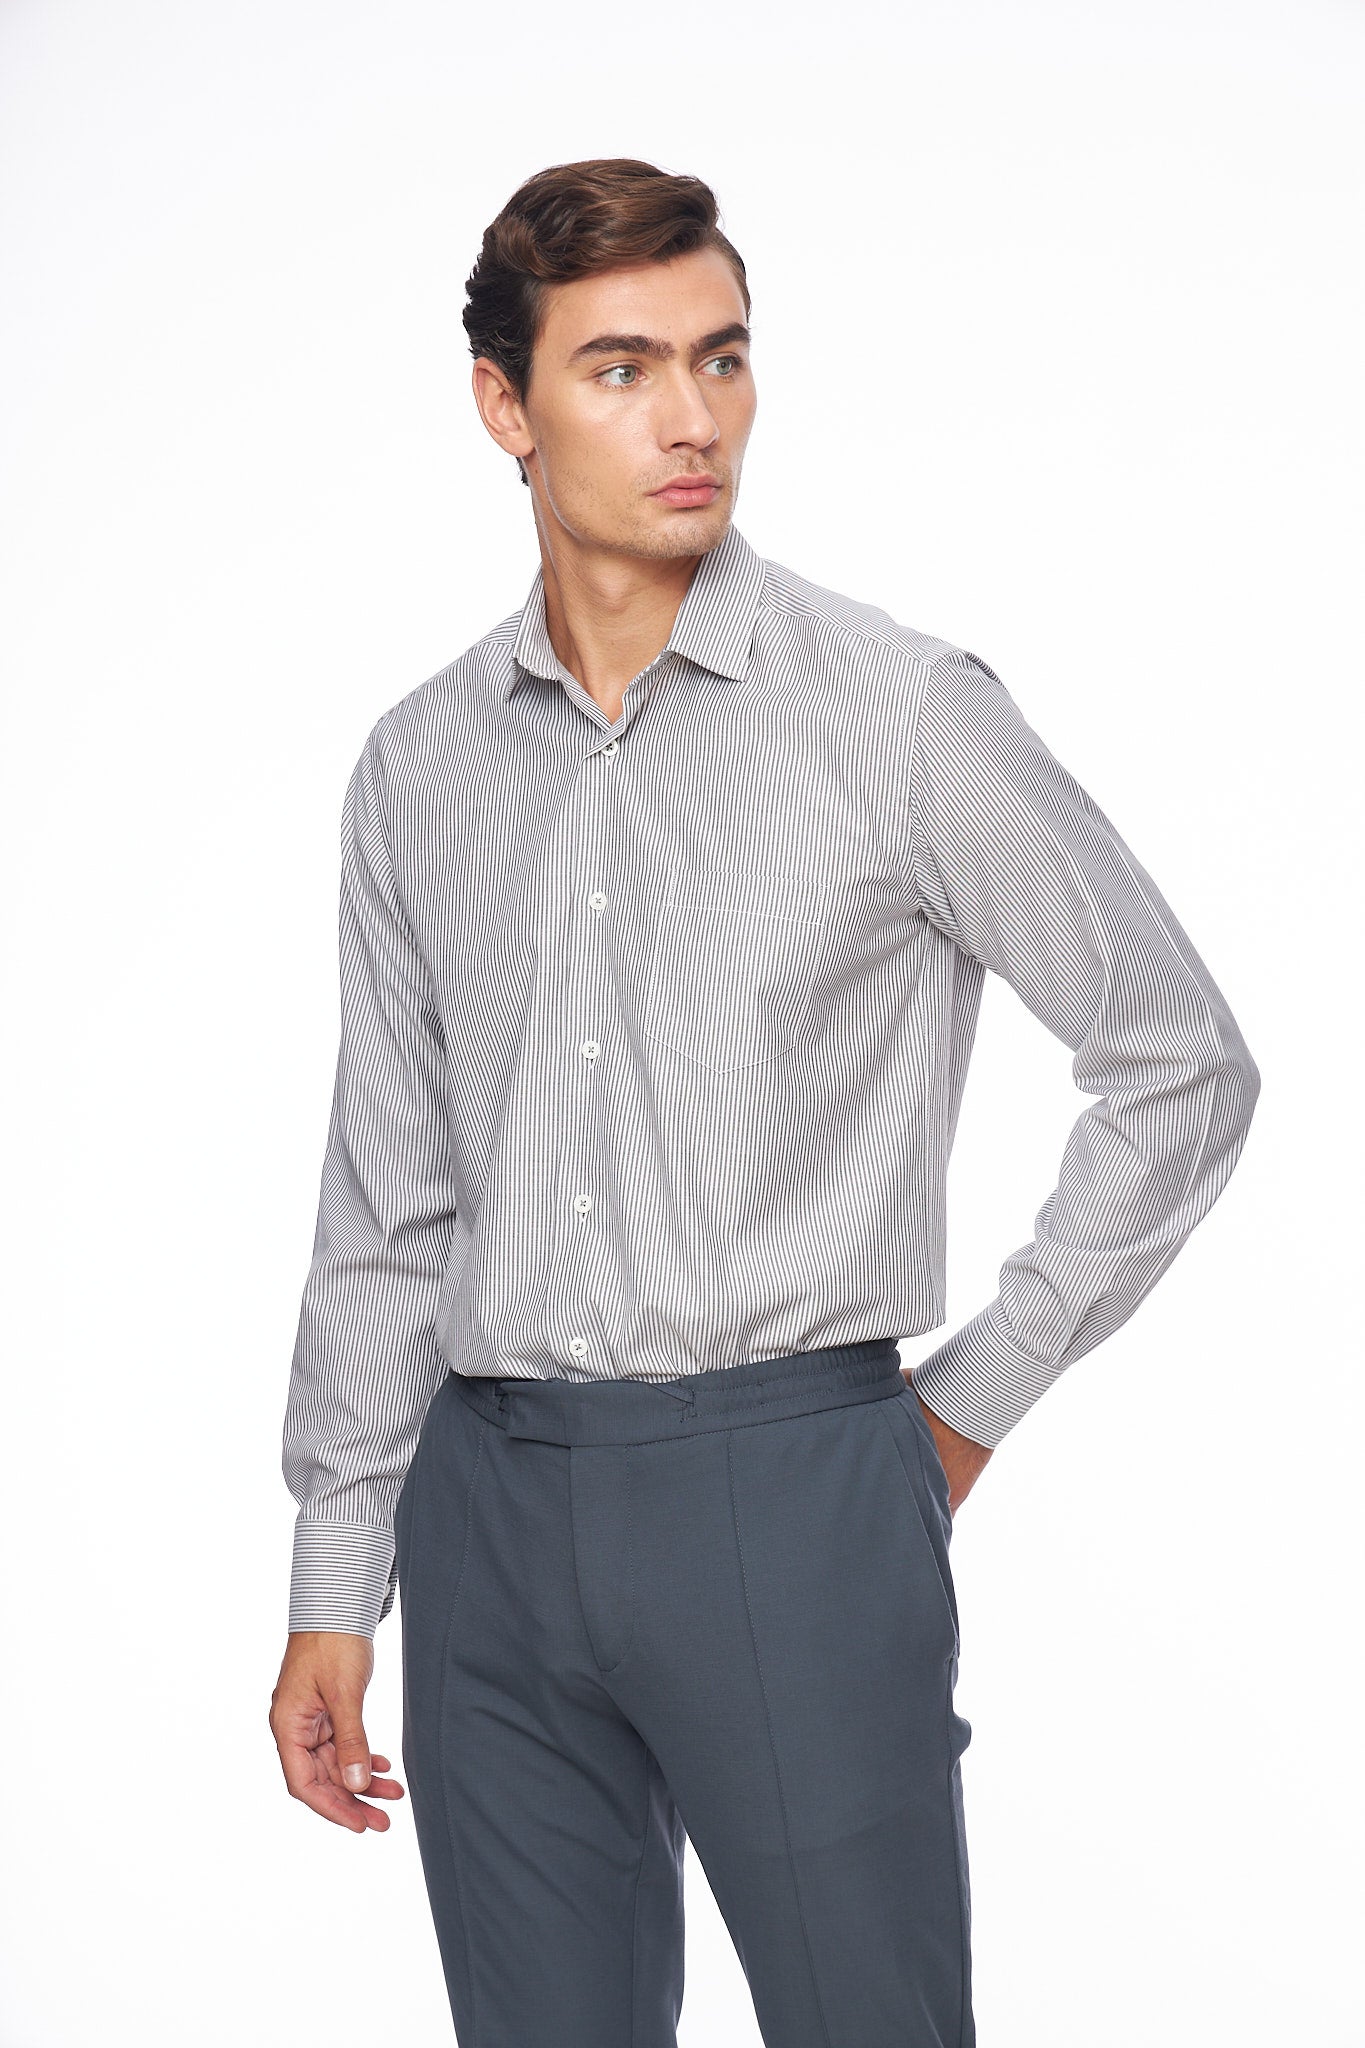 Мъжка риза, черно райе, права конструкция с джоб на гърдите.